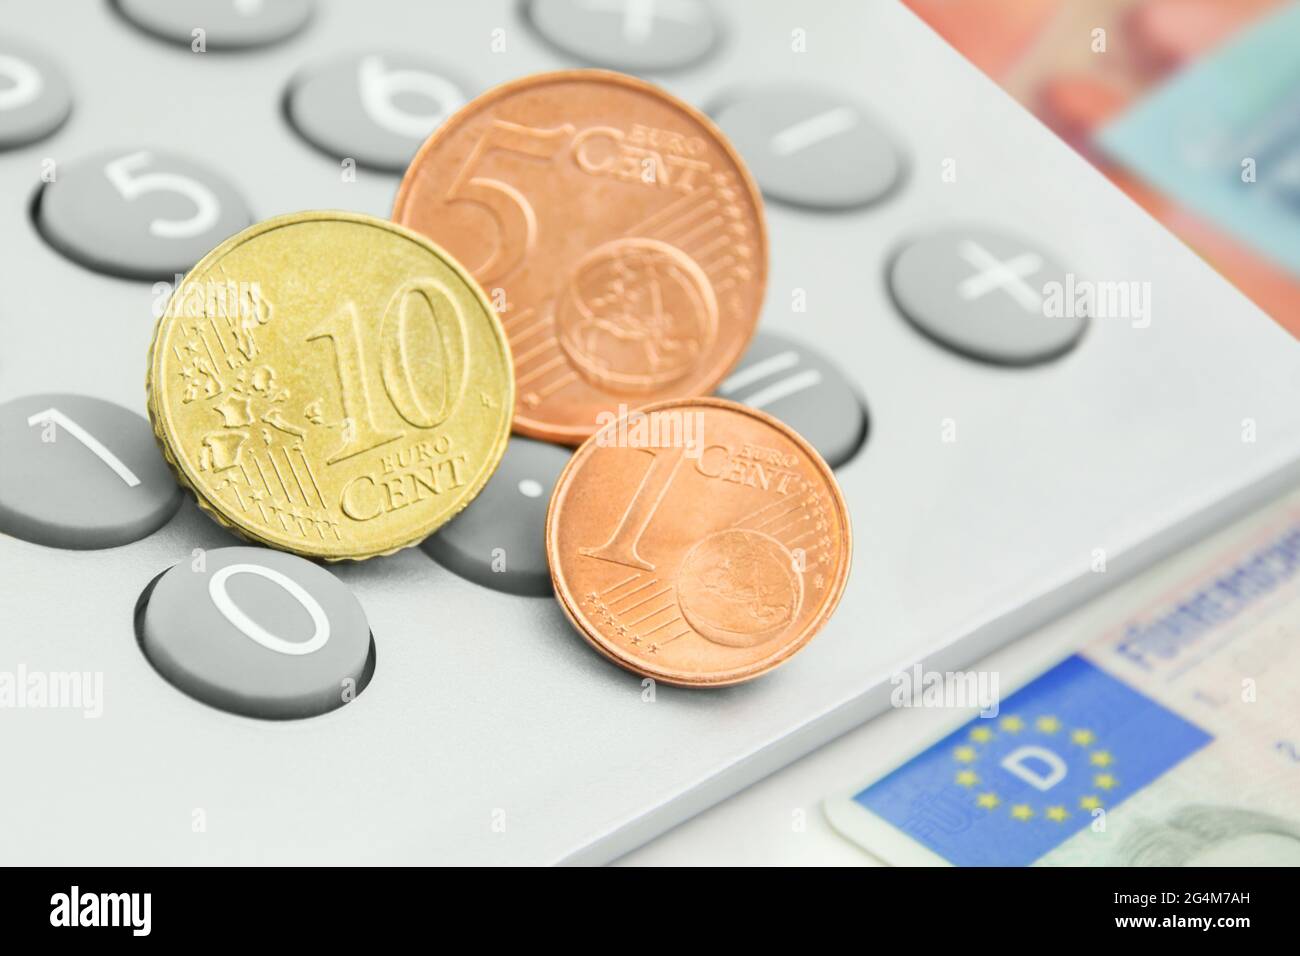 Calculadora y 16 céntimos de euro con permiso de conducción alemán  Fotografía de stock - Alamy